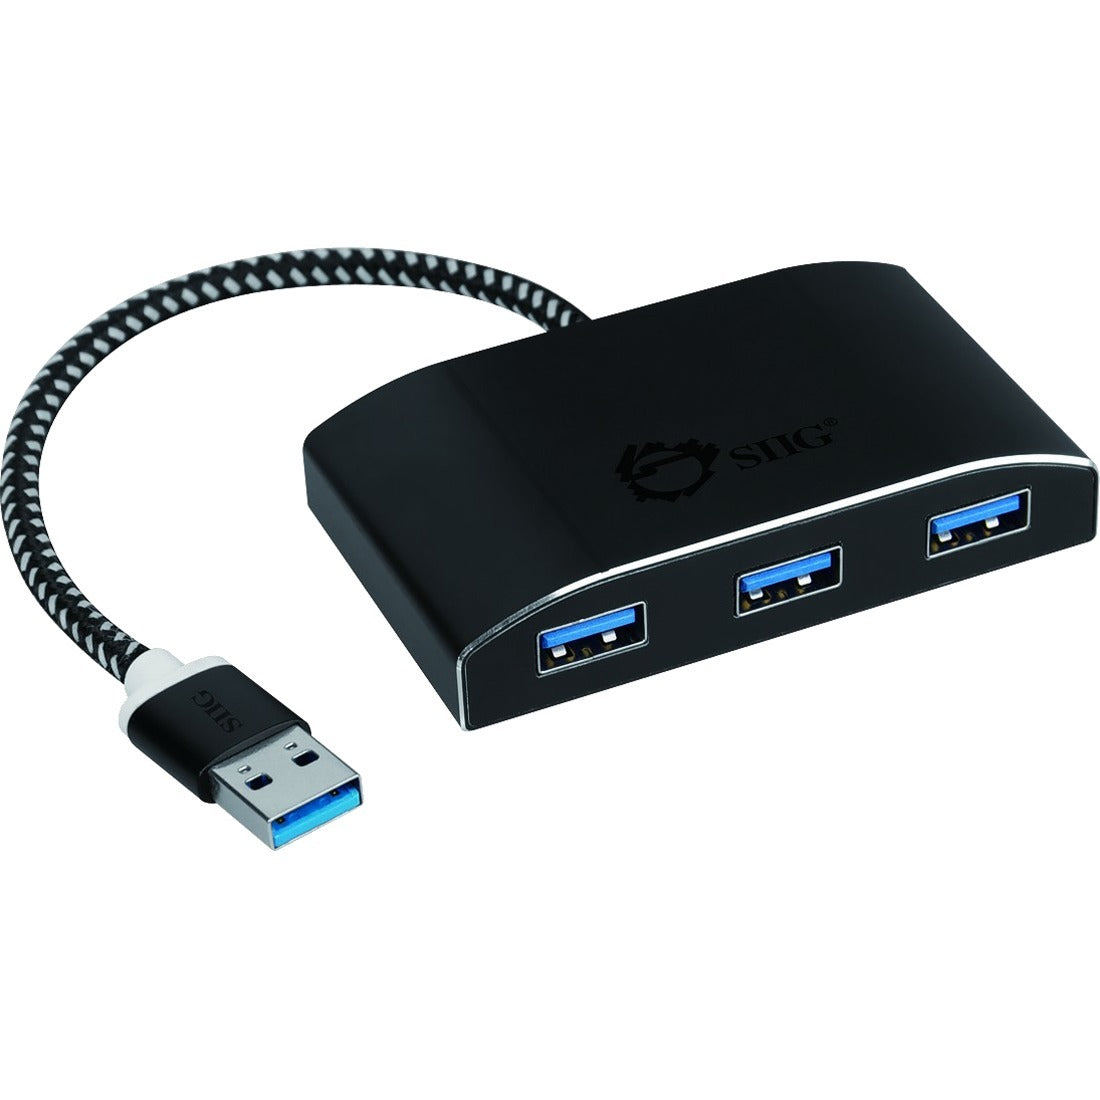 SIIG SuperSpeed USB 3.0 4-Port Powered Hub - JU-H40F12-S1